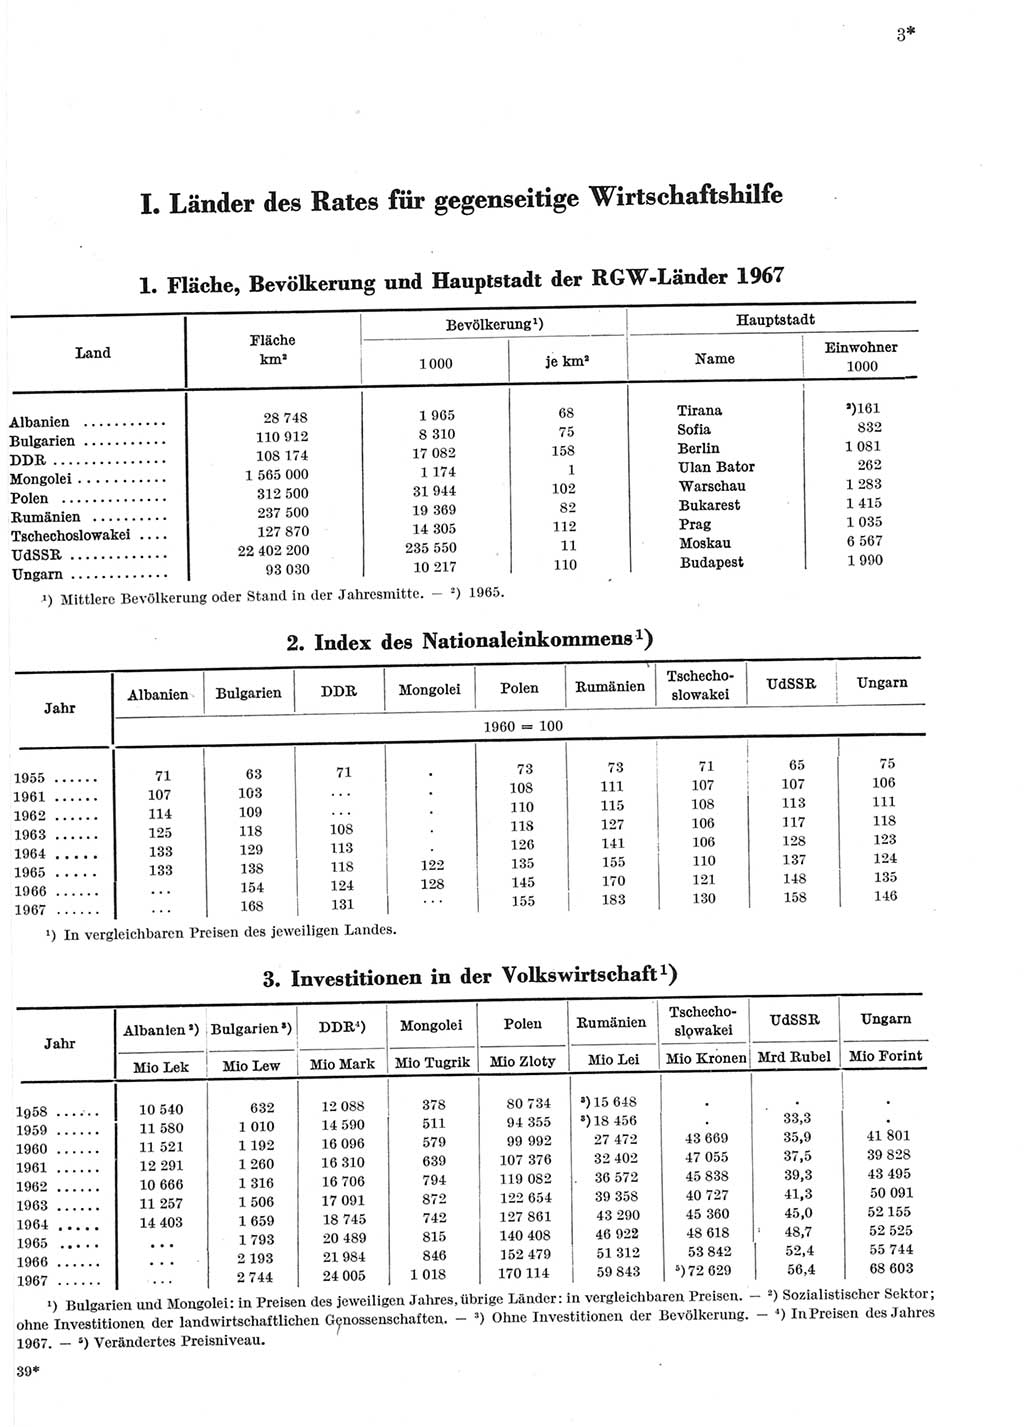 Statistisches Jahrbuch der Deutschen Demokratischen Republik (DDR) 1969, Seite 3 (Stat. Jb. DDR 1969, S. 3)